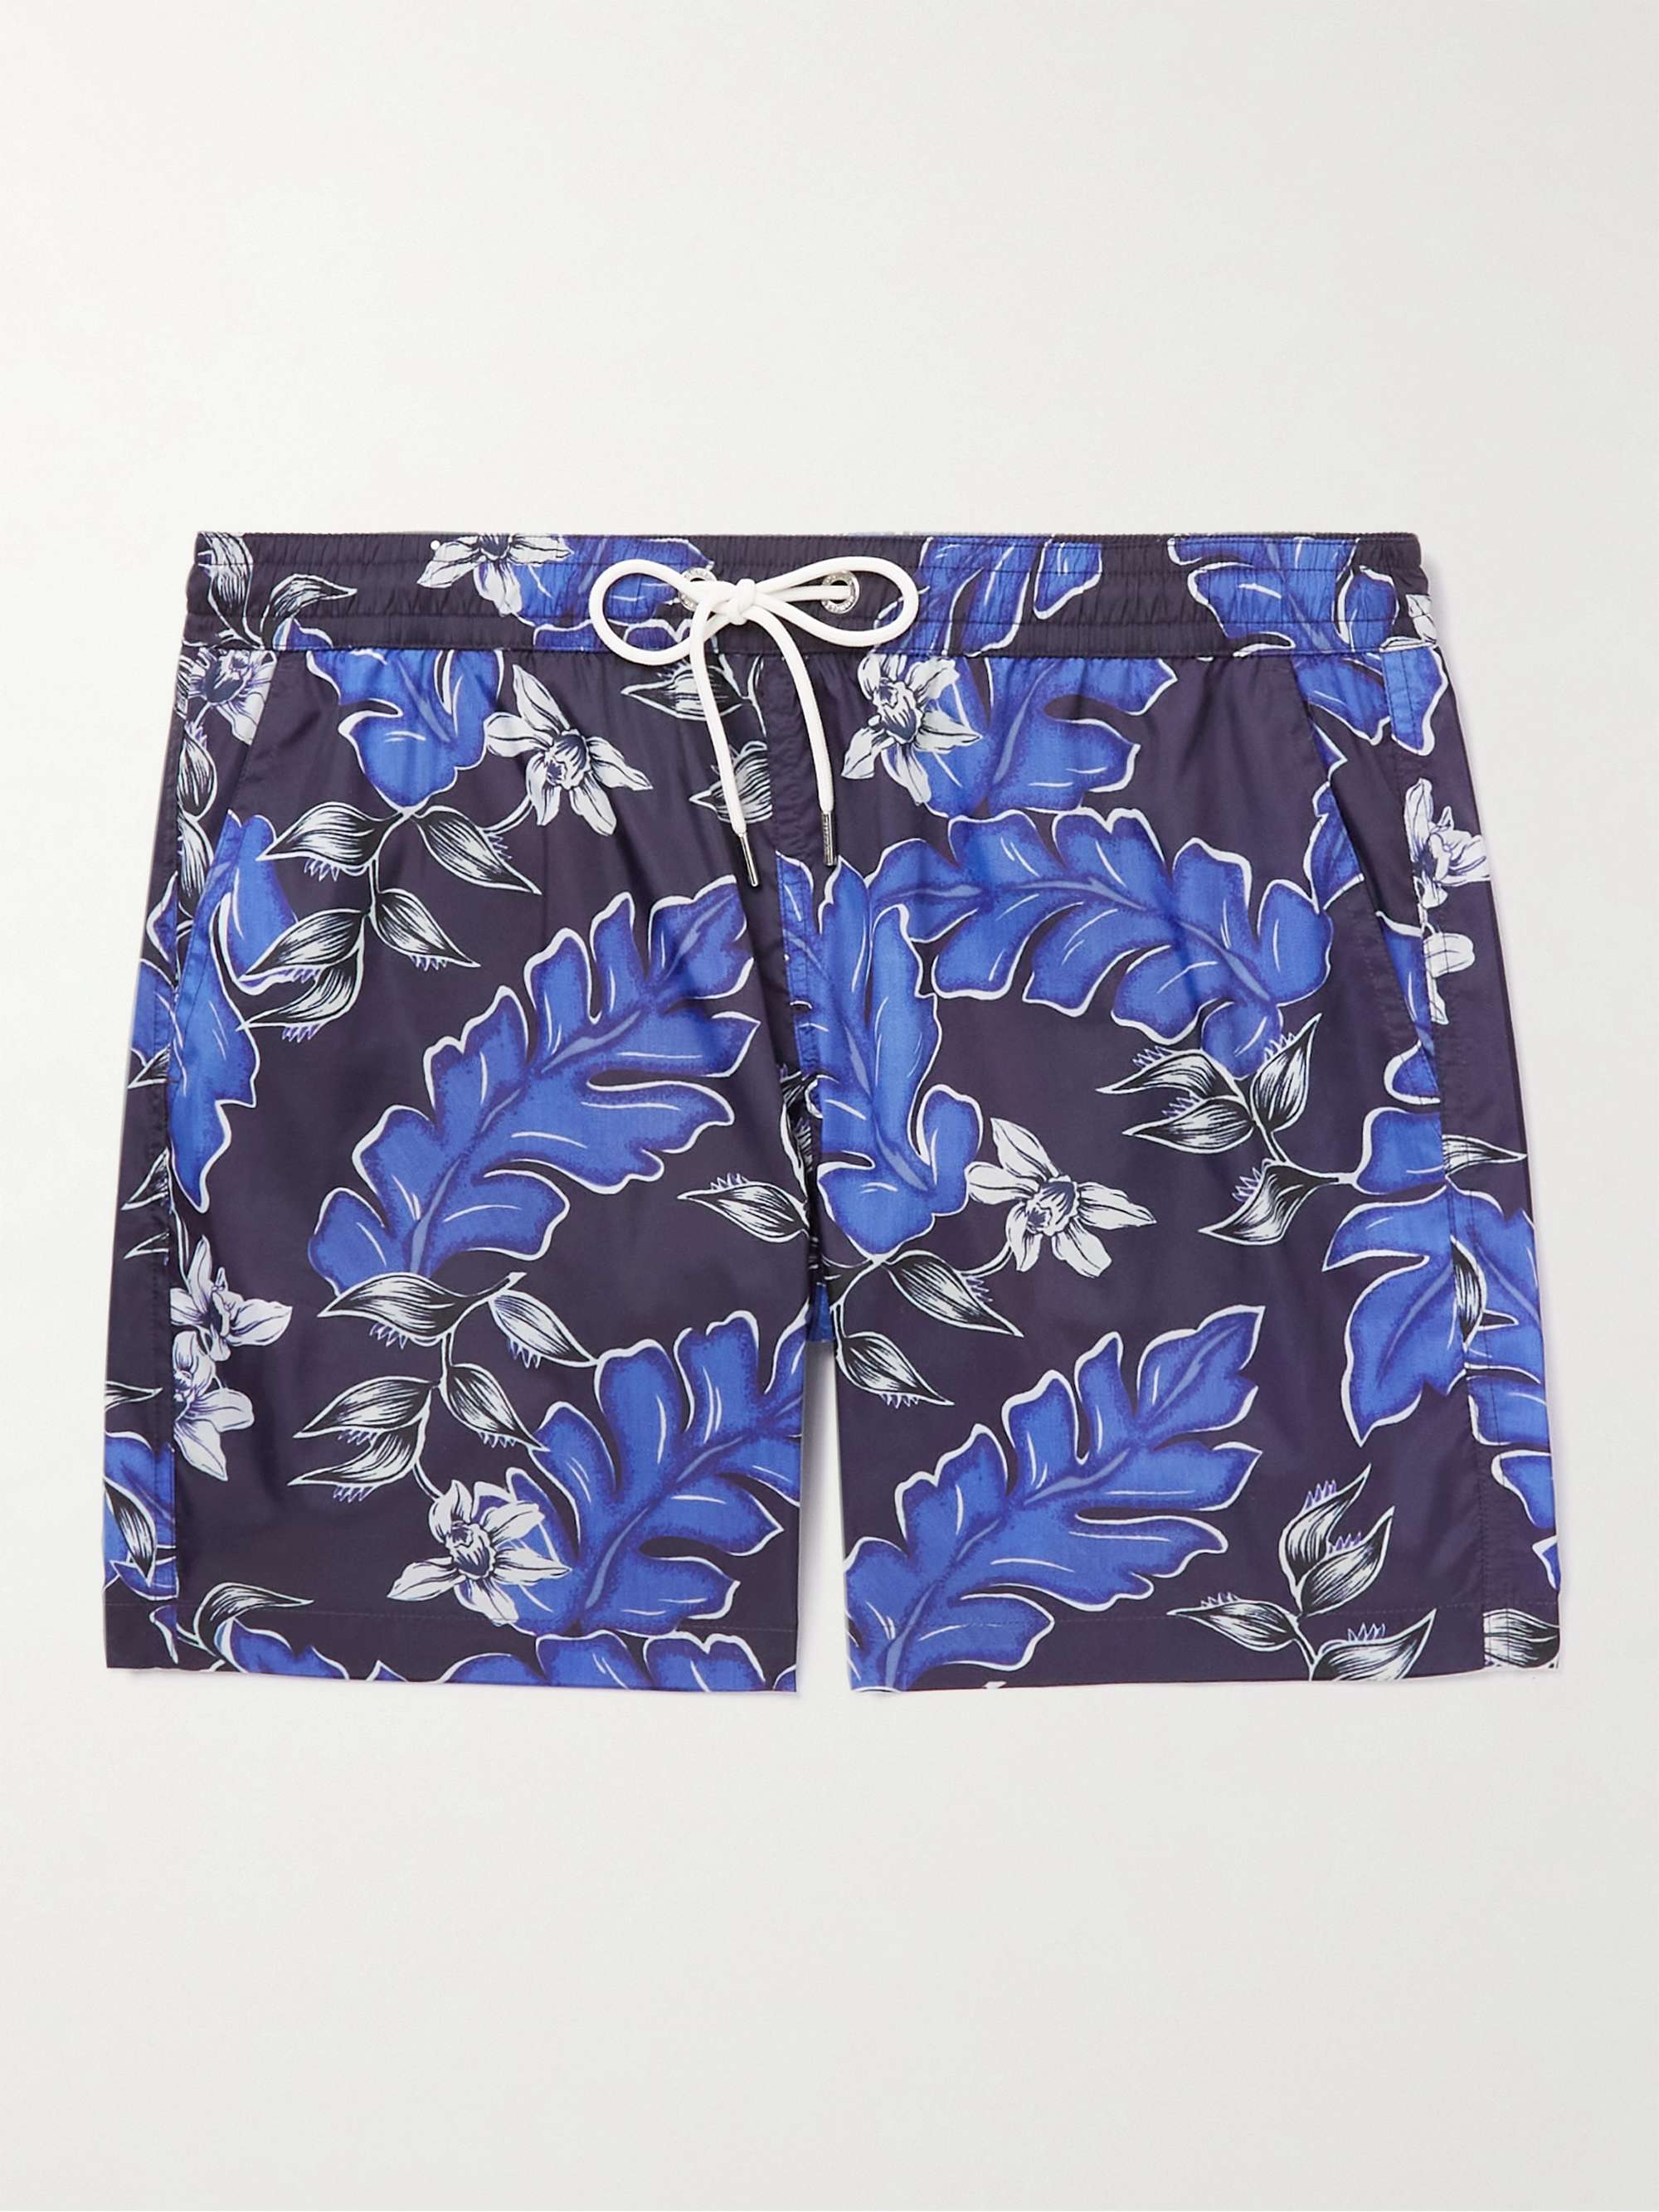 MONCLER Slim-Fit Short-Length Floral-Print Swim Shorts for Men | MR PORTER